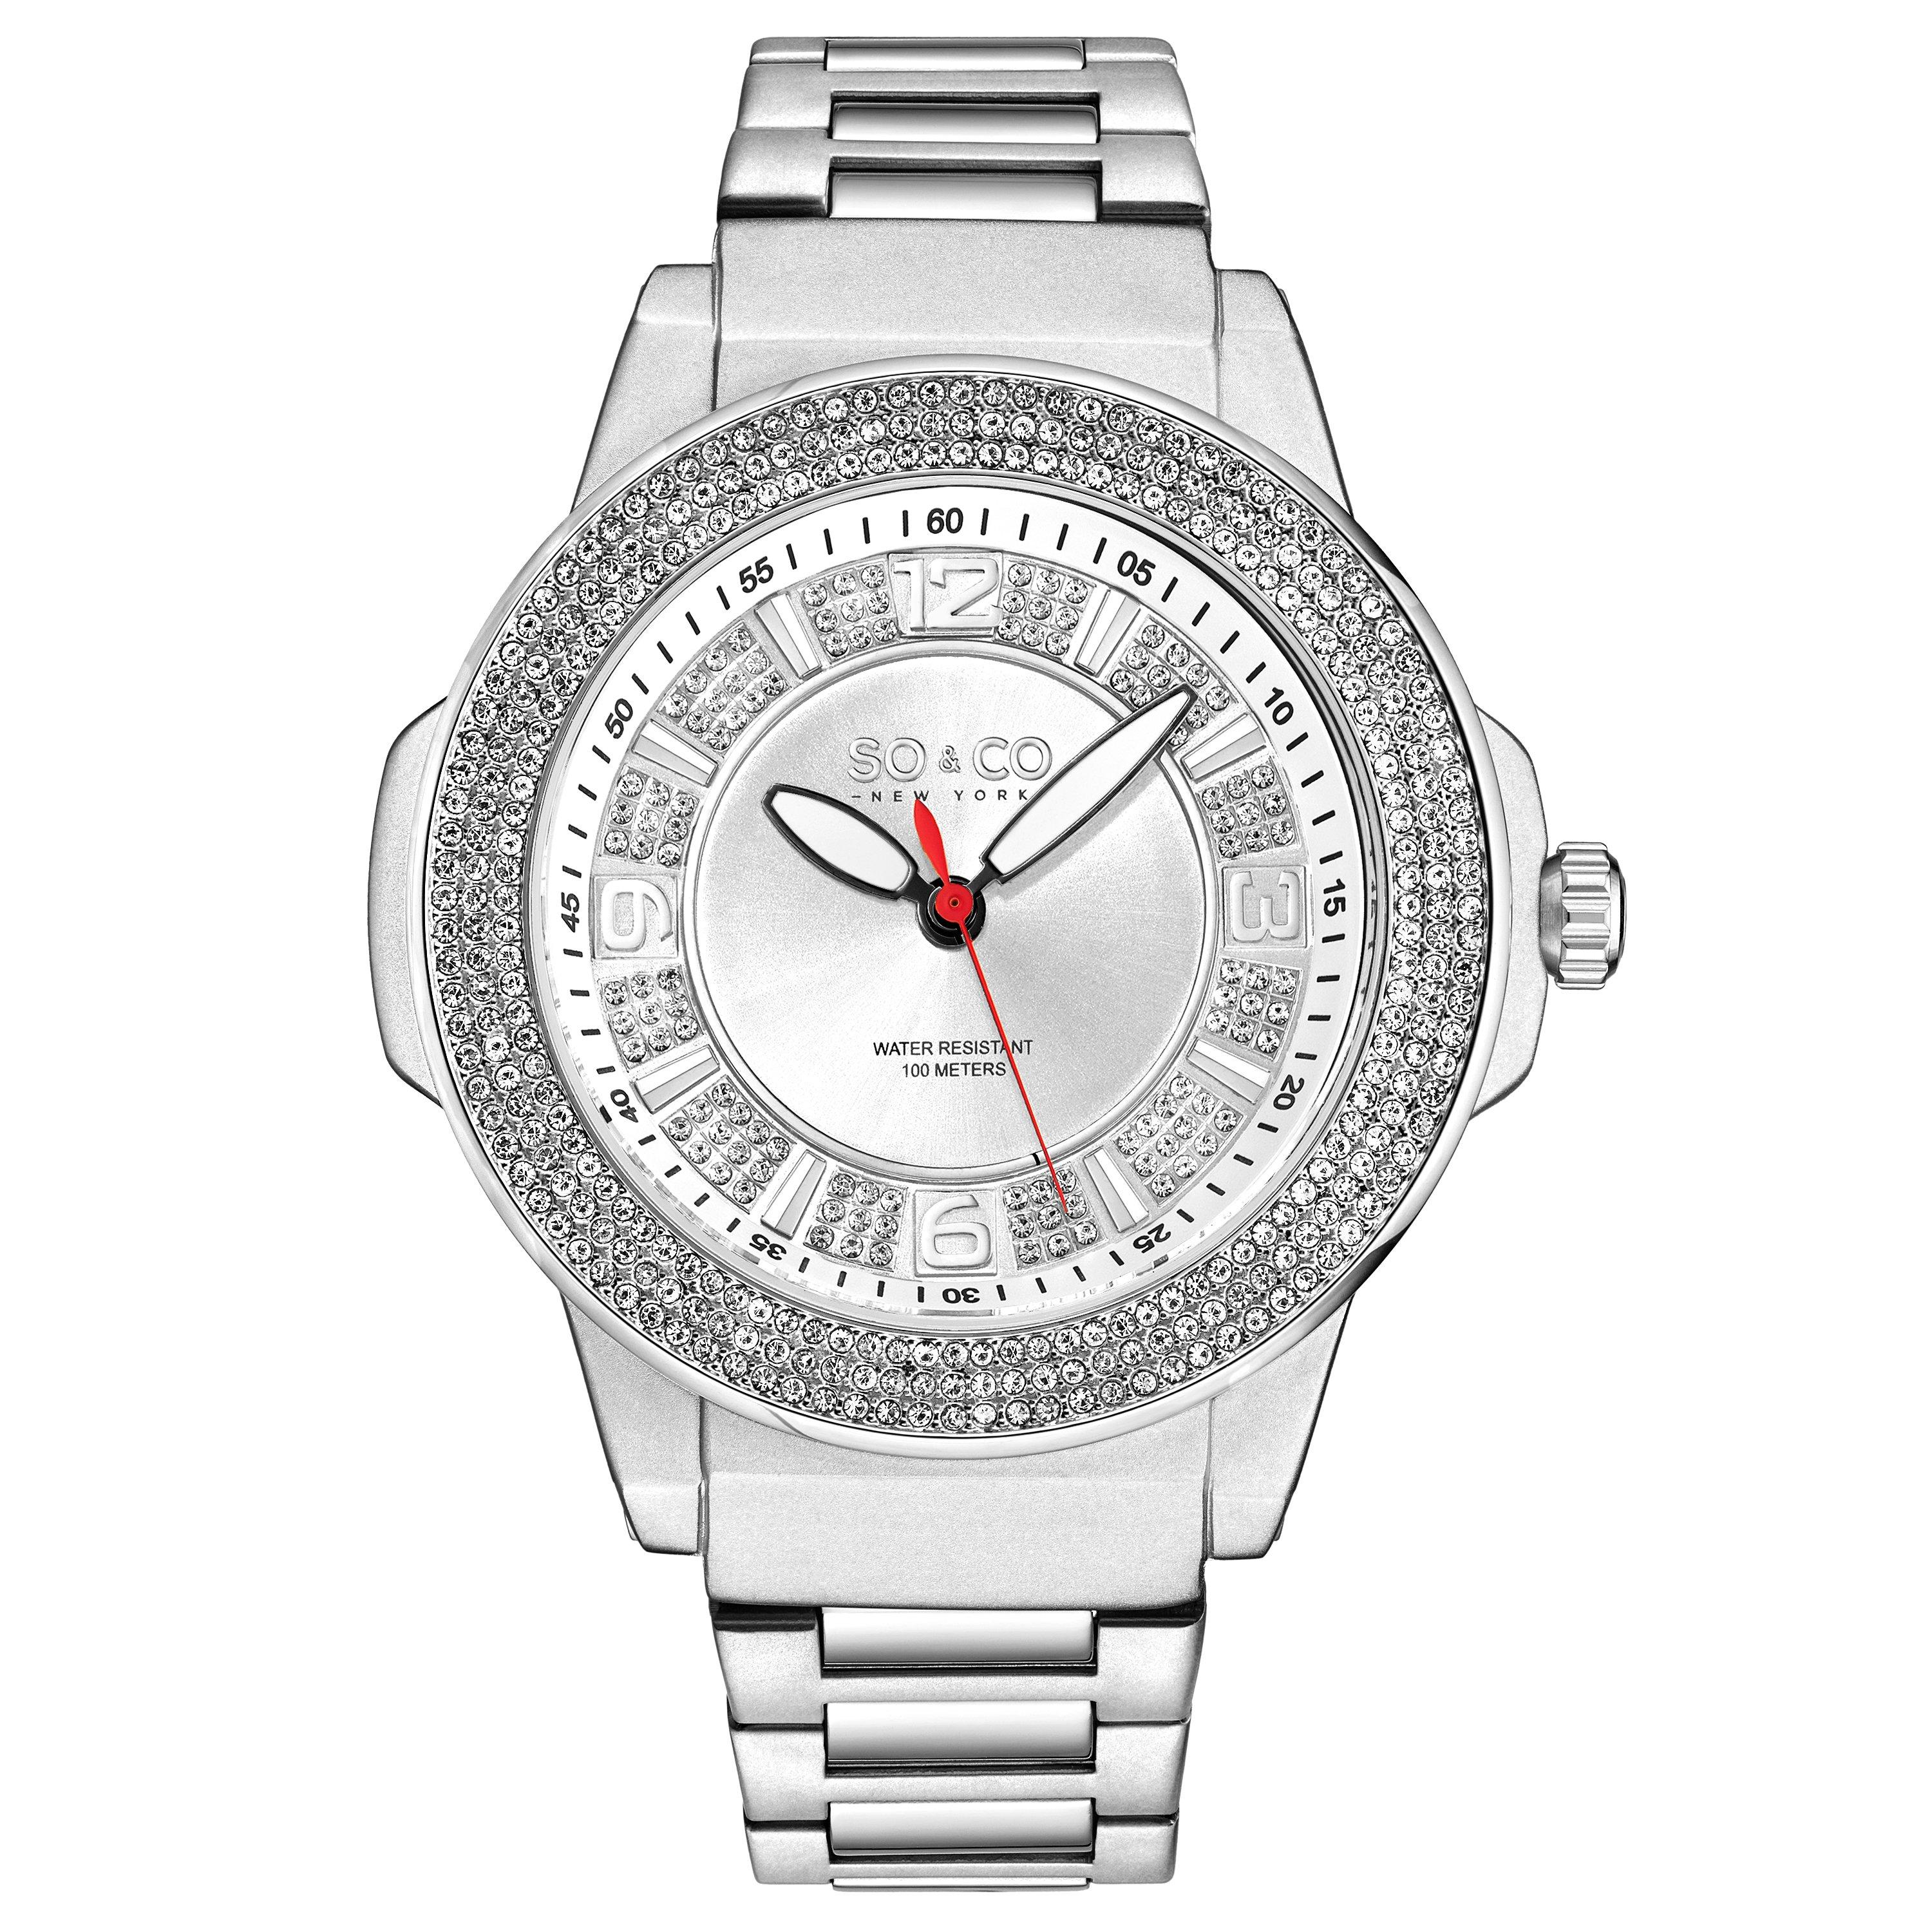 Кварцевые часы Madison 5565, диаметр 48 мм, с безелем, усыпанным кристаллами, и серебряным циферблатом SO&CO, серебро